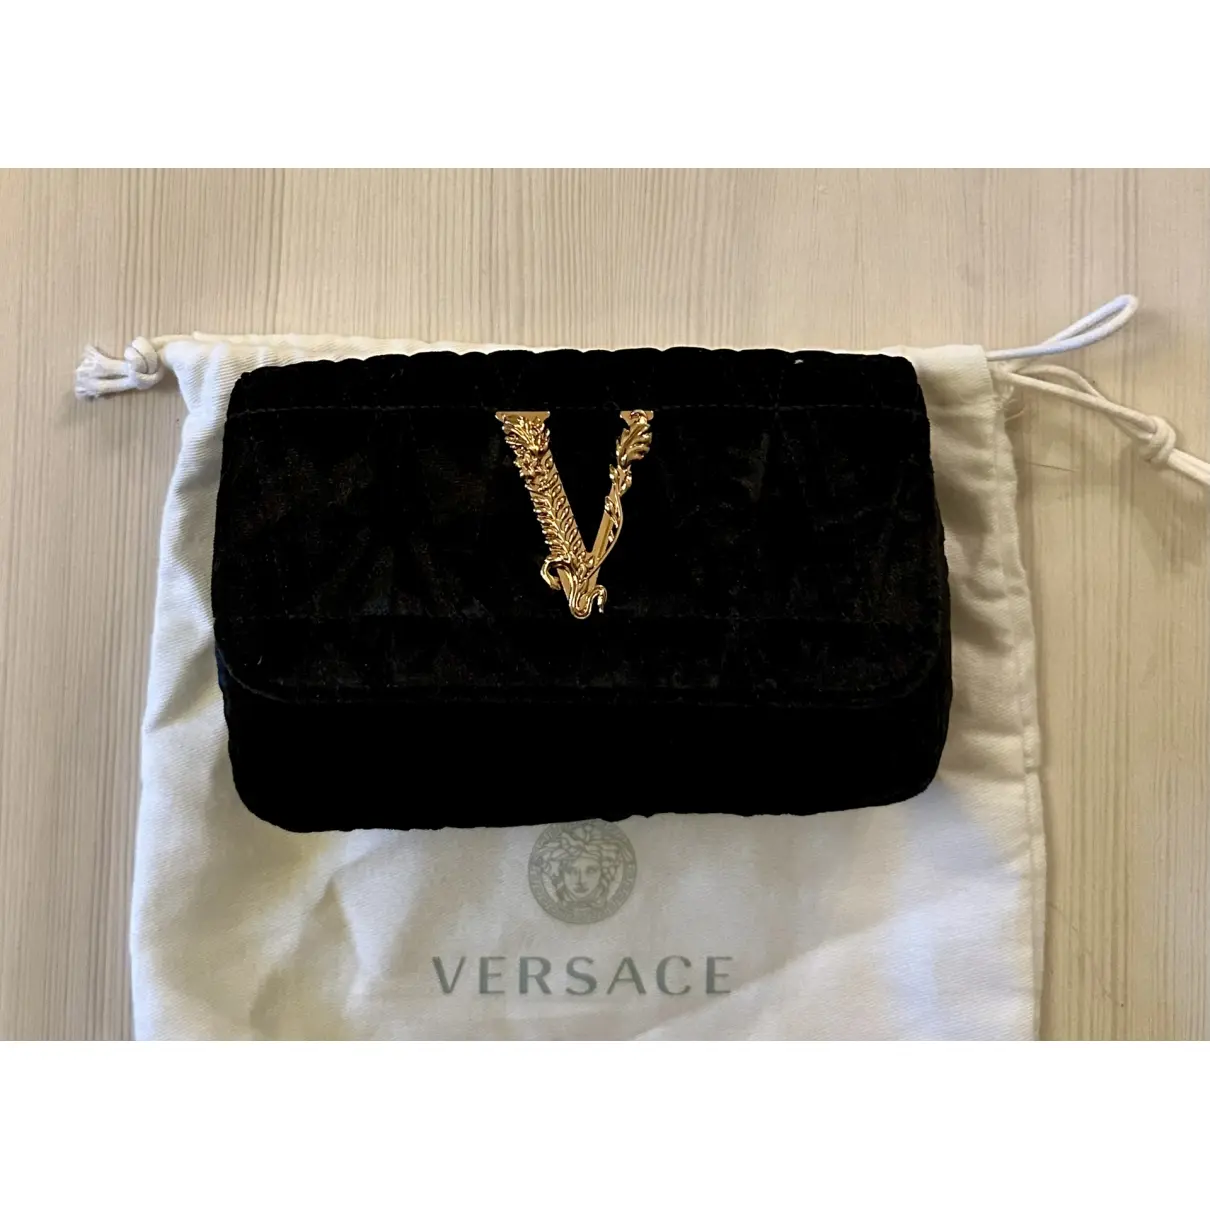 Buy Versace Virtus velvet handbag online